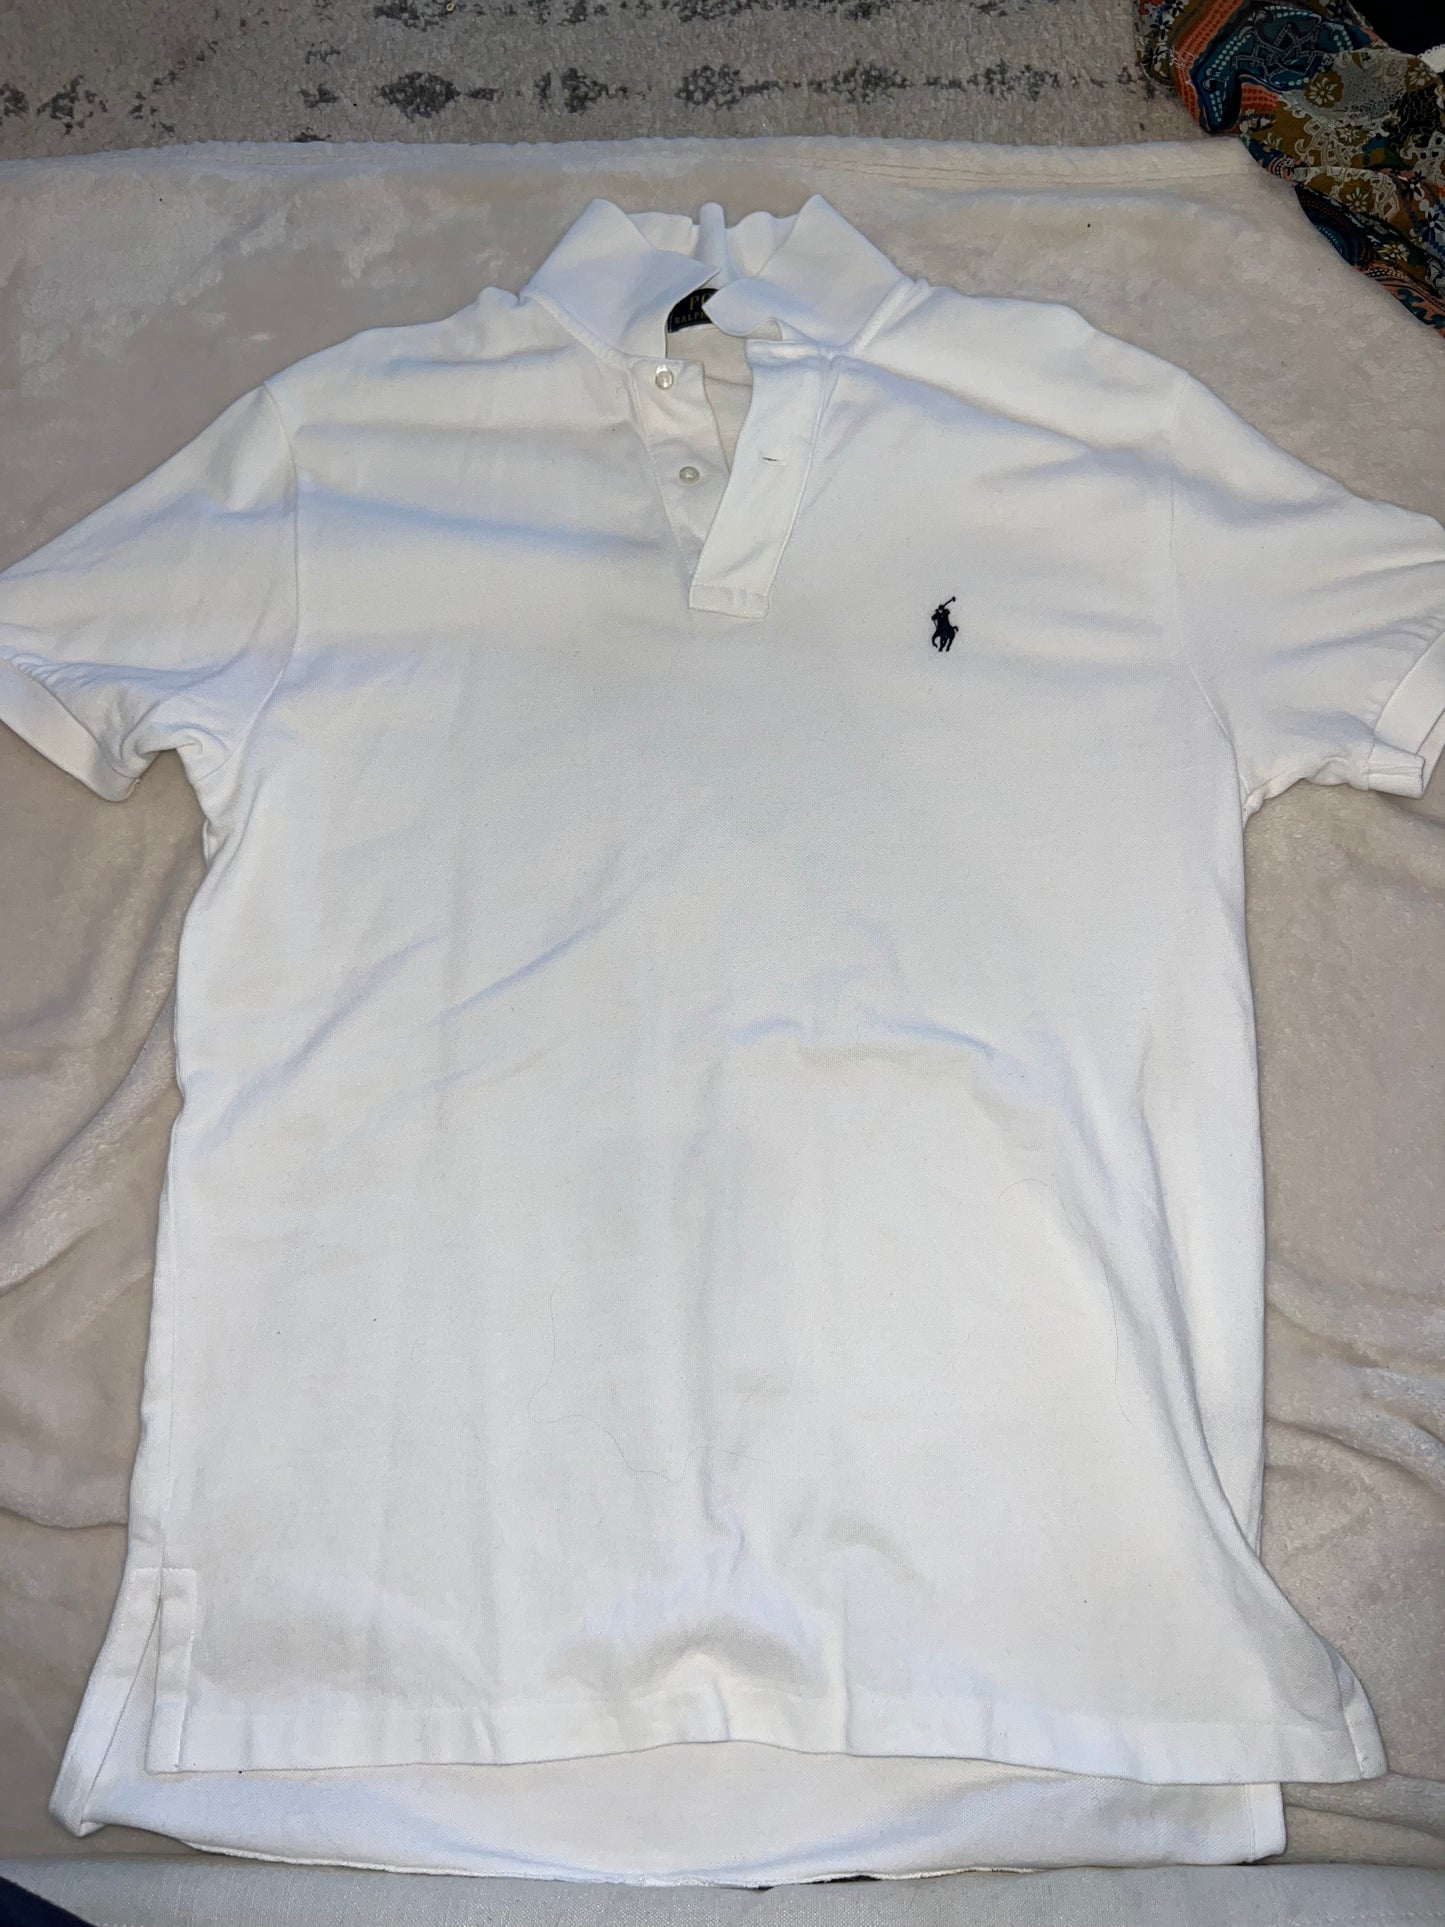 Mens Medium White Polo dry cleaned